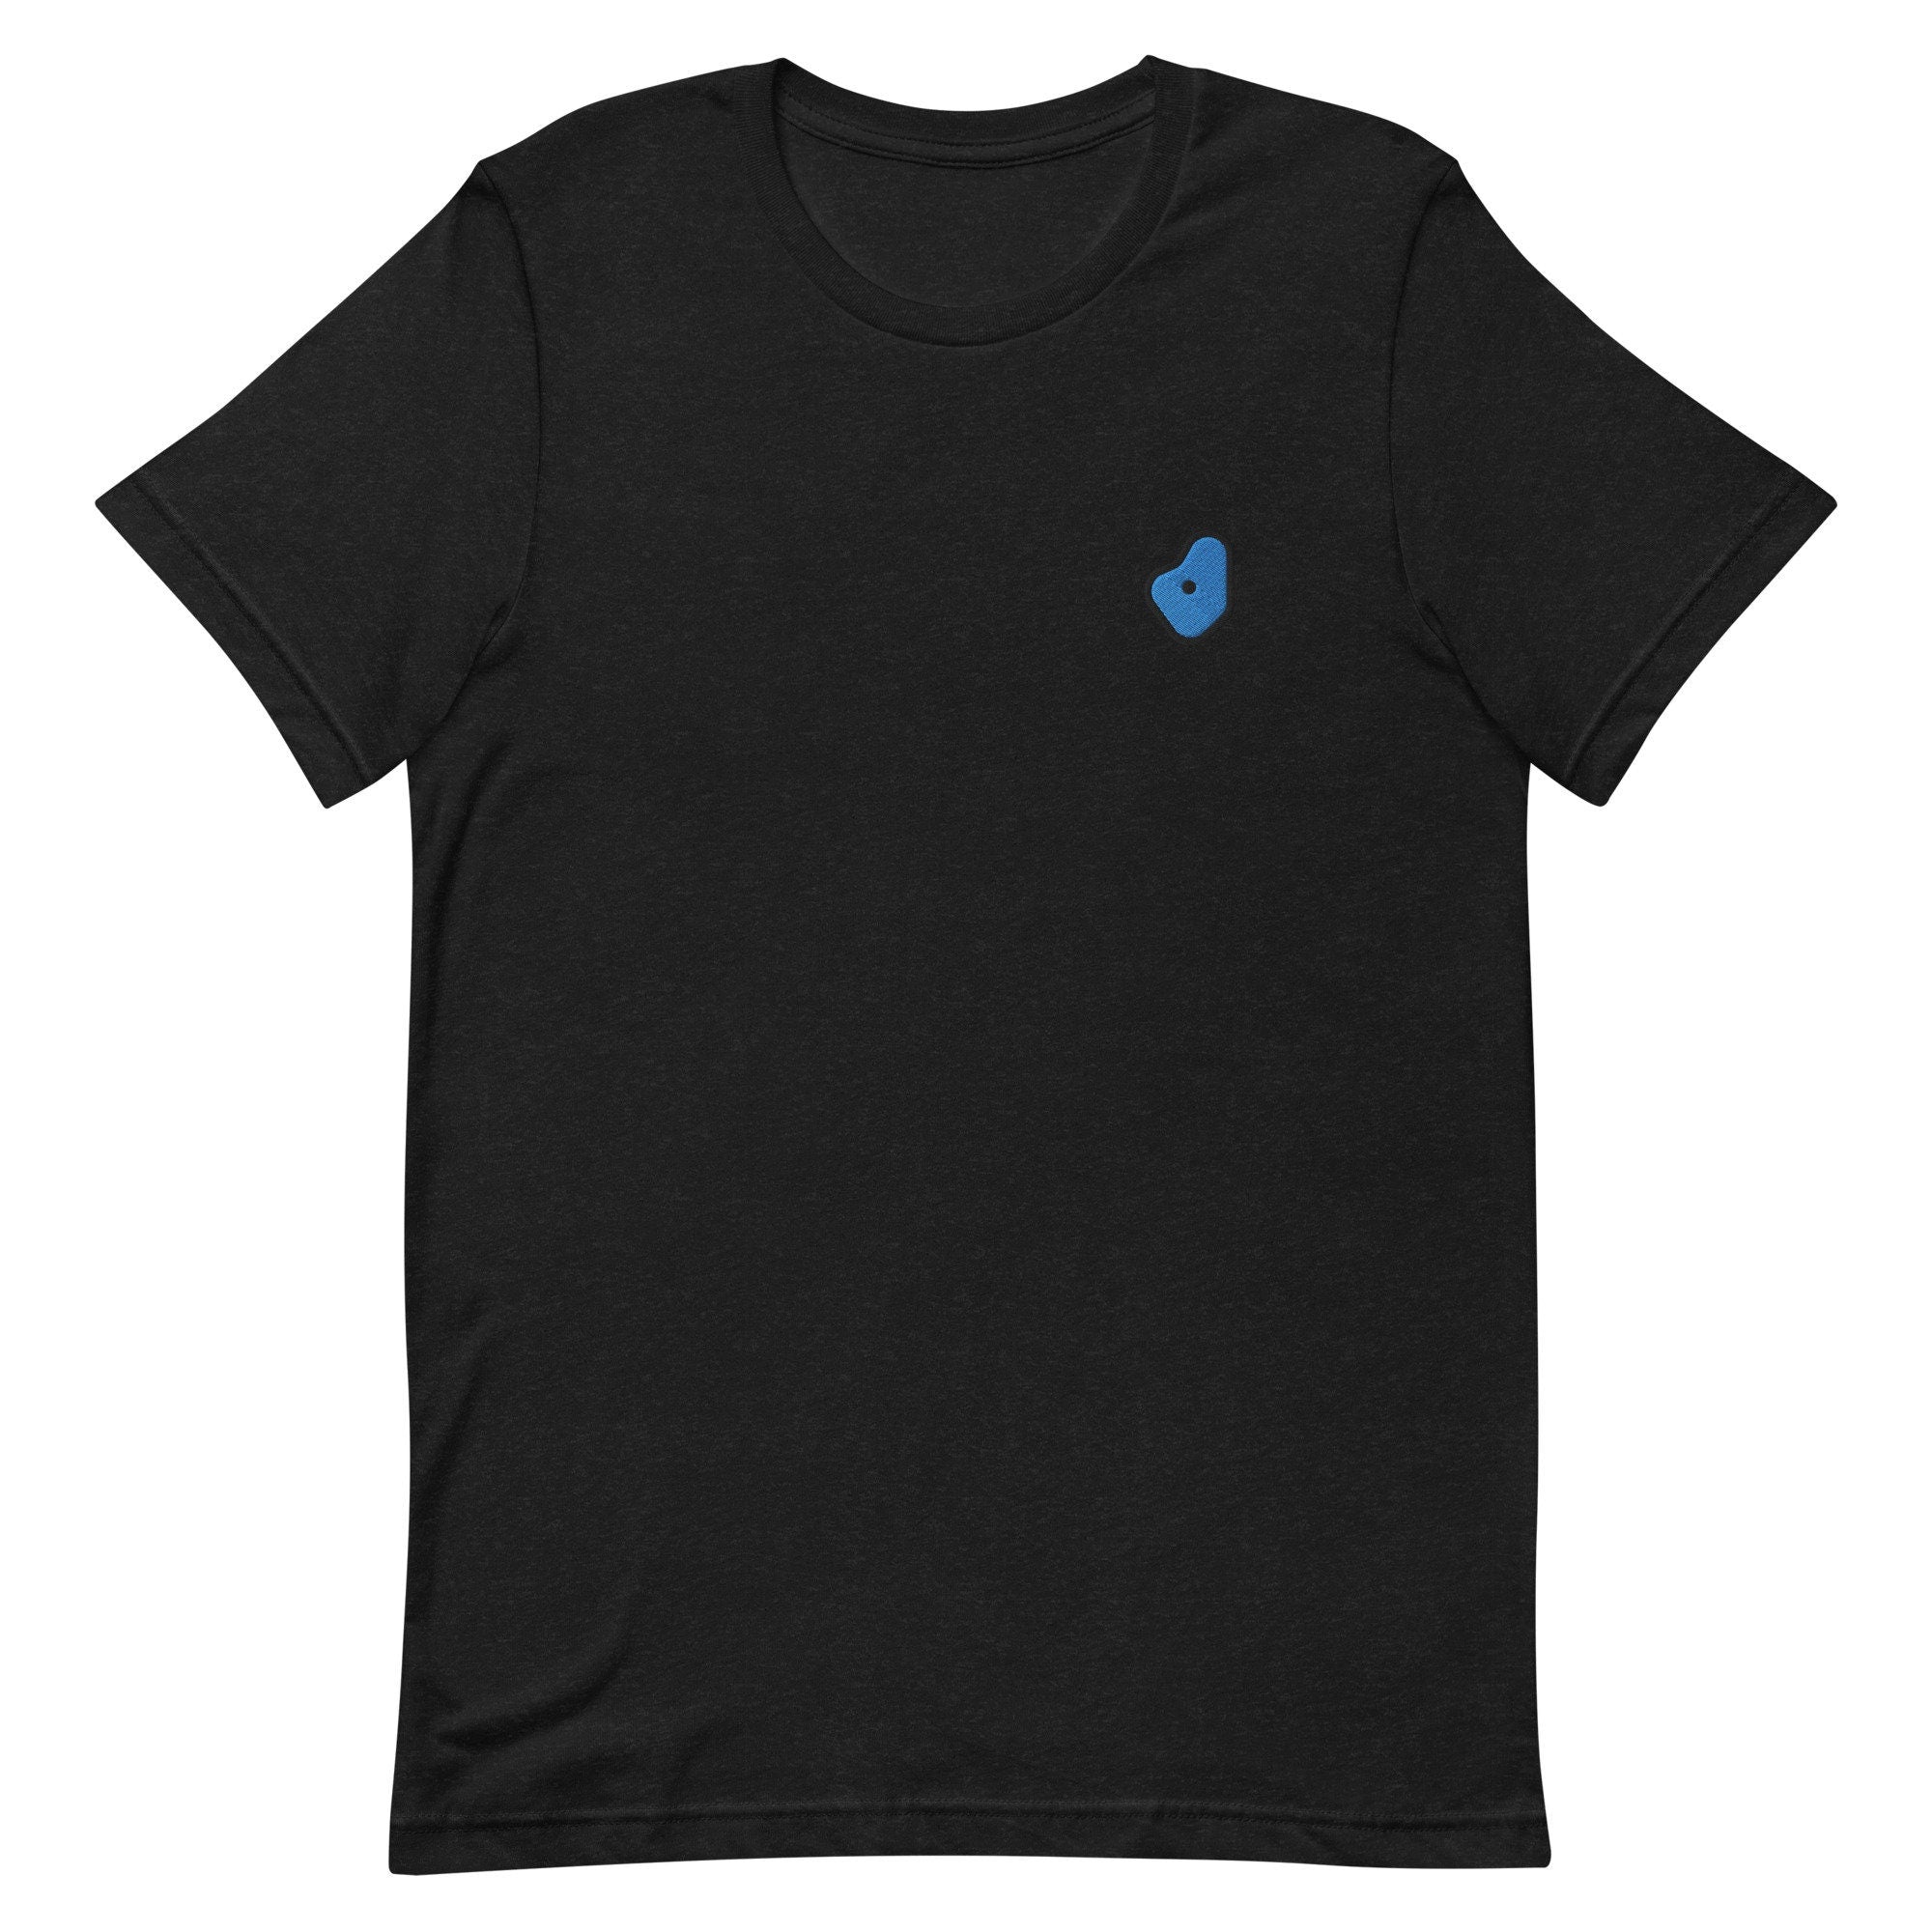 Bouldering Premium Men's T-Shirt, Embroidered Men's T-Shirt Gift for Boyfriend, Men's Short Sleeve Shirt - Multiple Colors